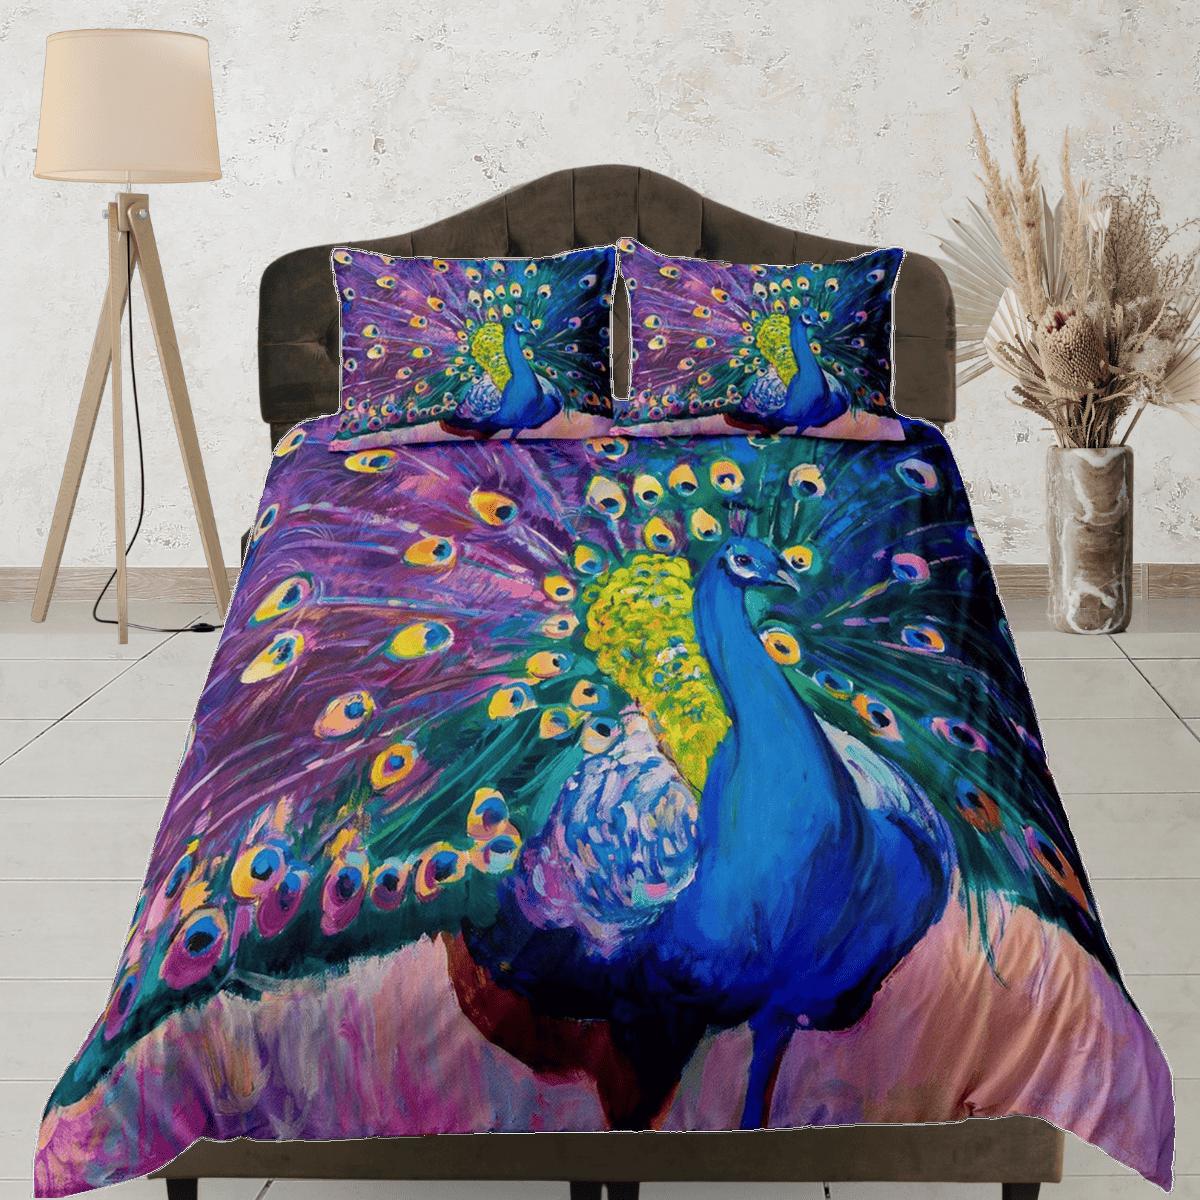 Colorful peacock decor aesthetic bedding set full, luxury duvet cover